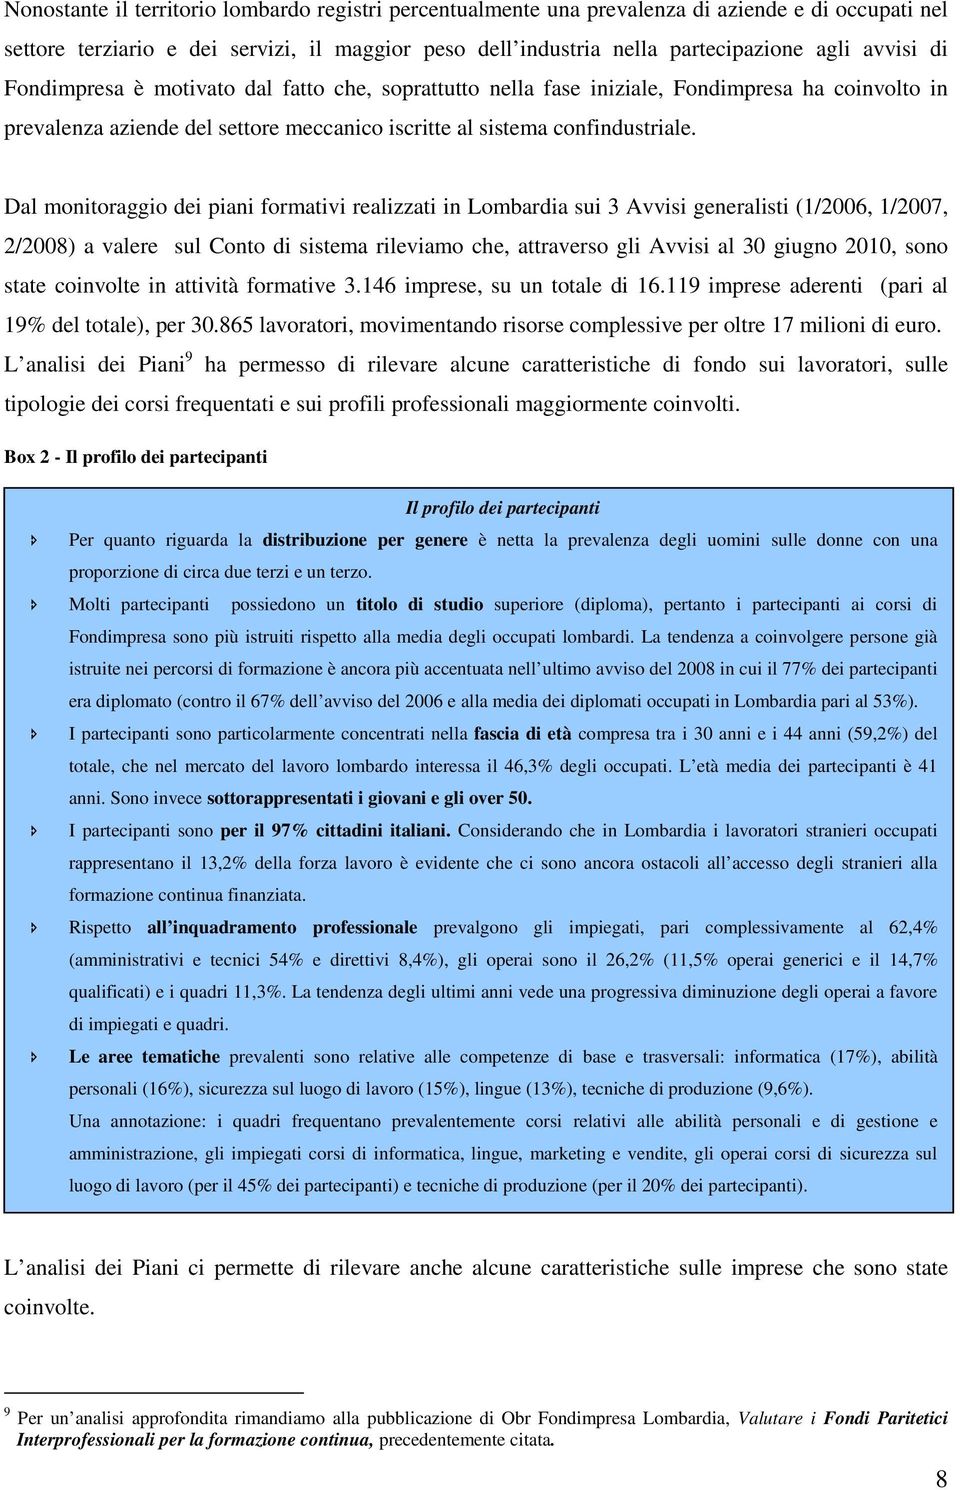 Dal monitoraggio dei piani formativi realizzati in Lombardia sui 3 Avvisi generalisti (1/2006, 1/2007, 2/2008) a valere sul Conto di sistema rileviamo che, attraverso gli Avvisi al 30 giugno 2010,